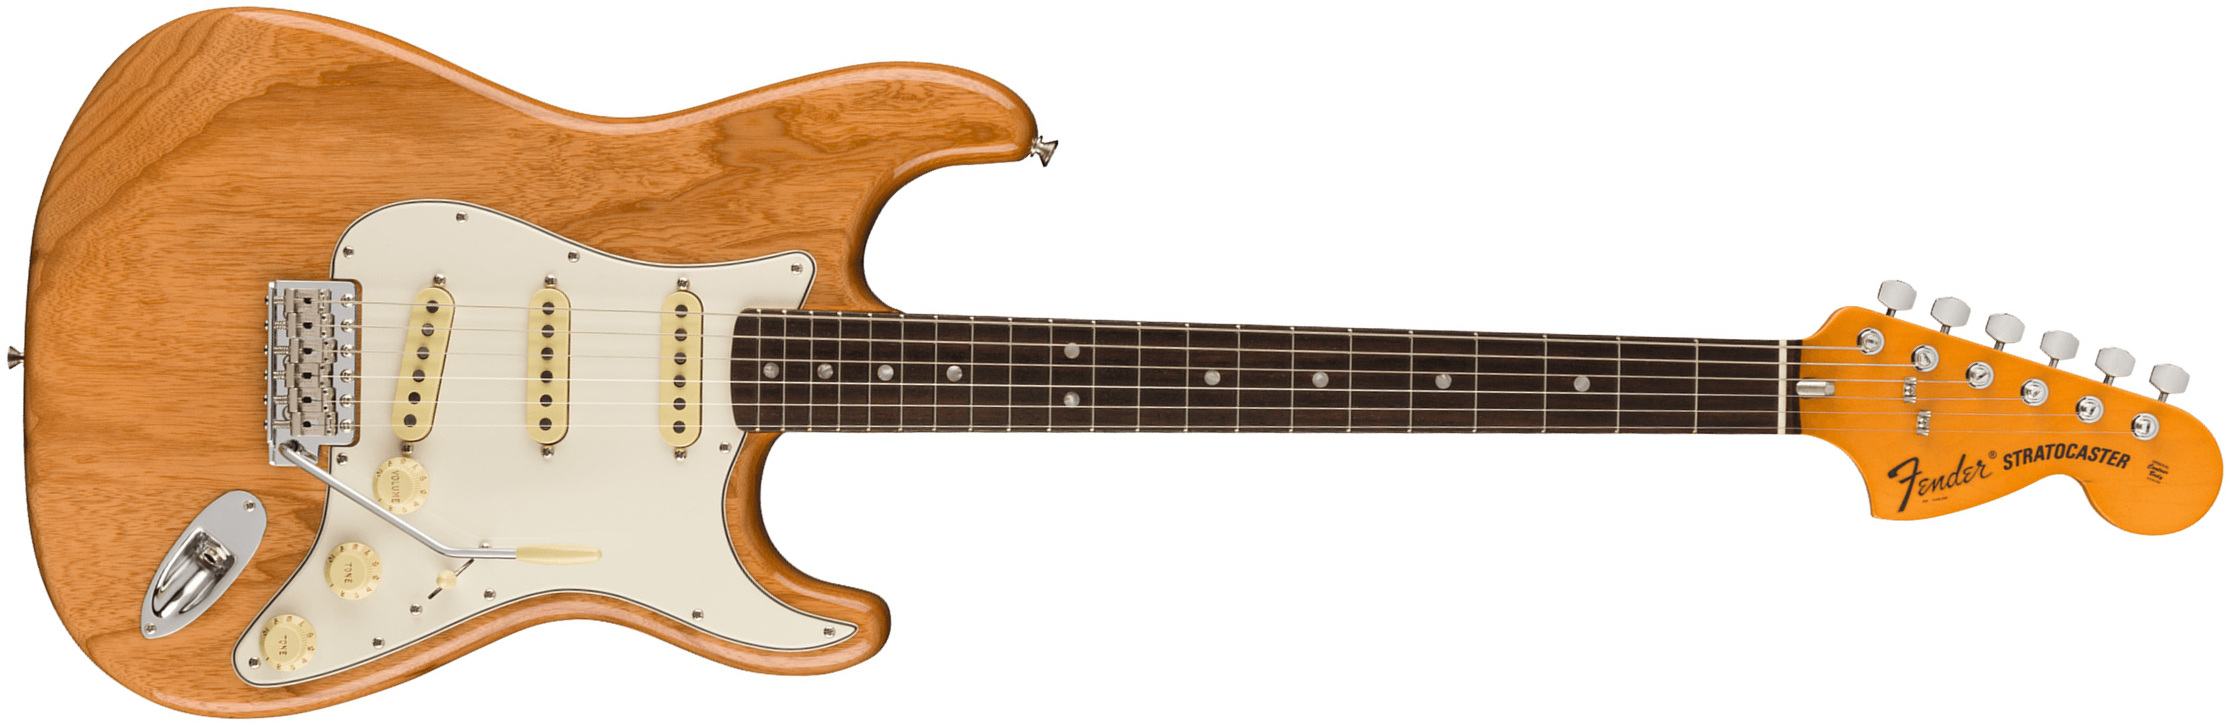 Fender Strat 1973 American Vintage Ii Usa 3s Trem Rw - Aged Natural - Elektrische gitaar in Str-vorm - Main picture